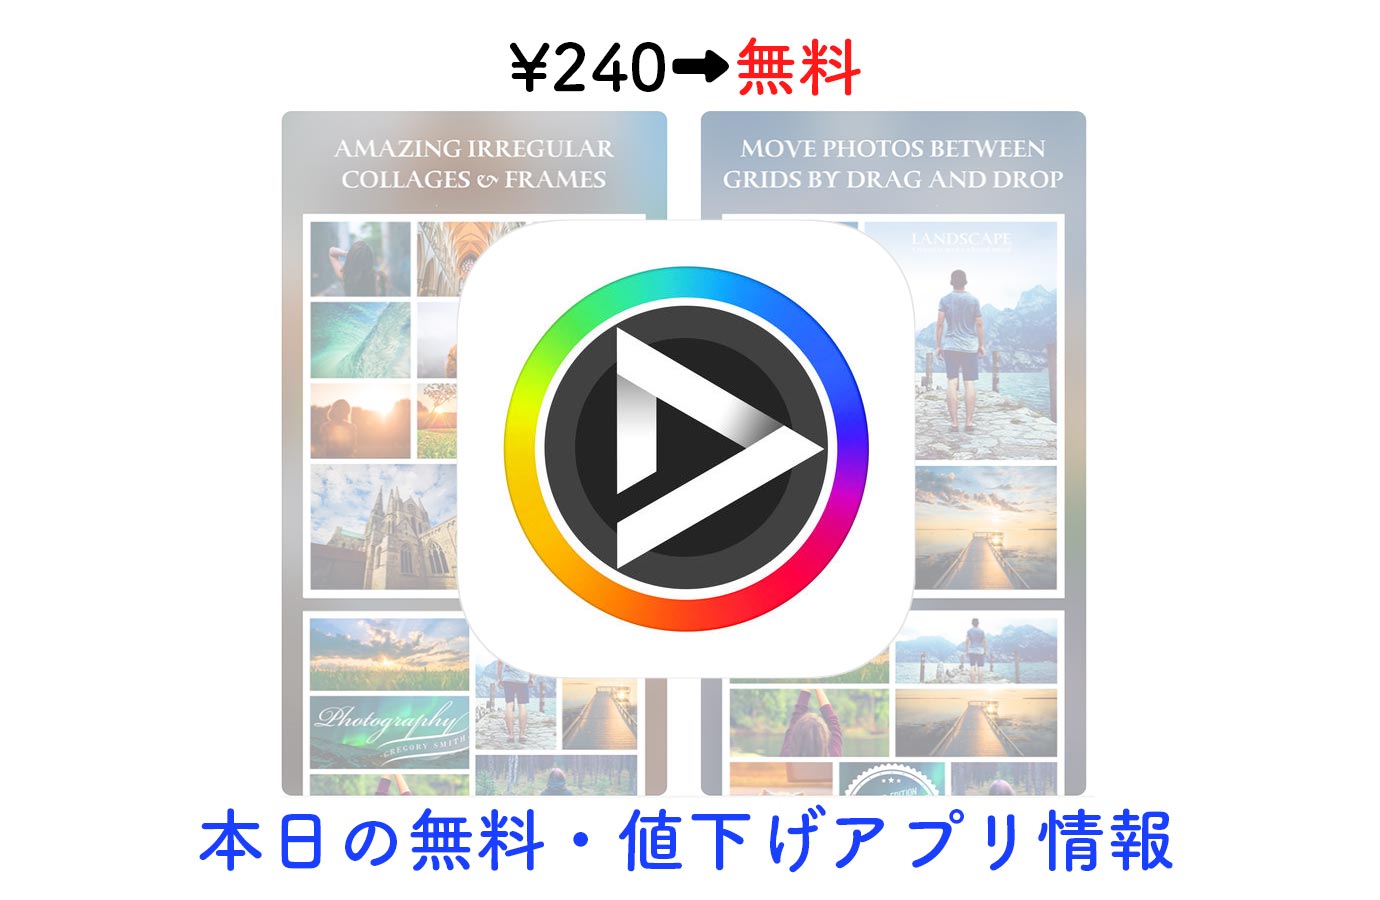 240円→無料、180種類以上のコラージュやフレームなどを搭載した写真加工アプリ「After Frame 365」など【5/8】セールアプリ情報